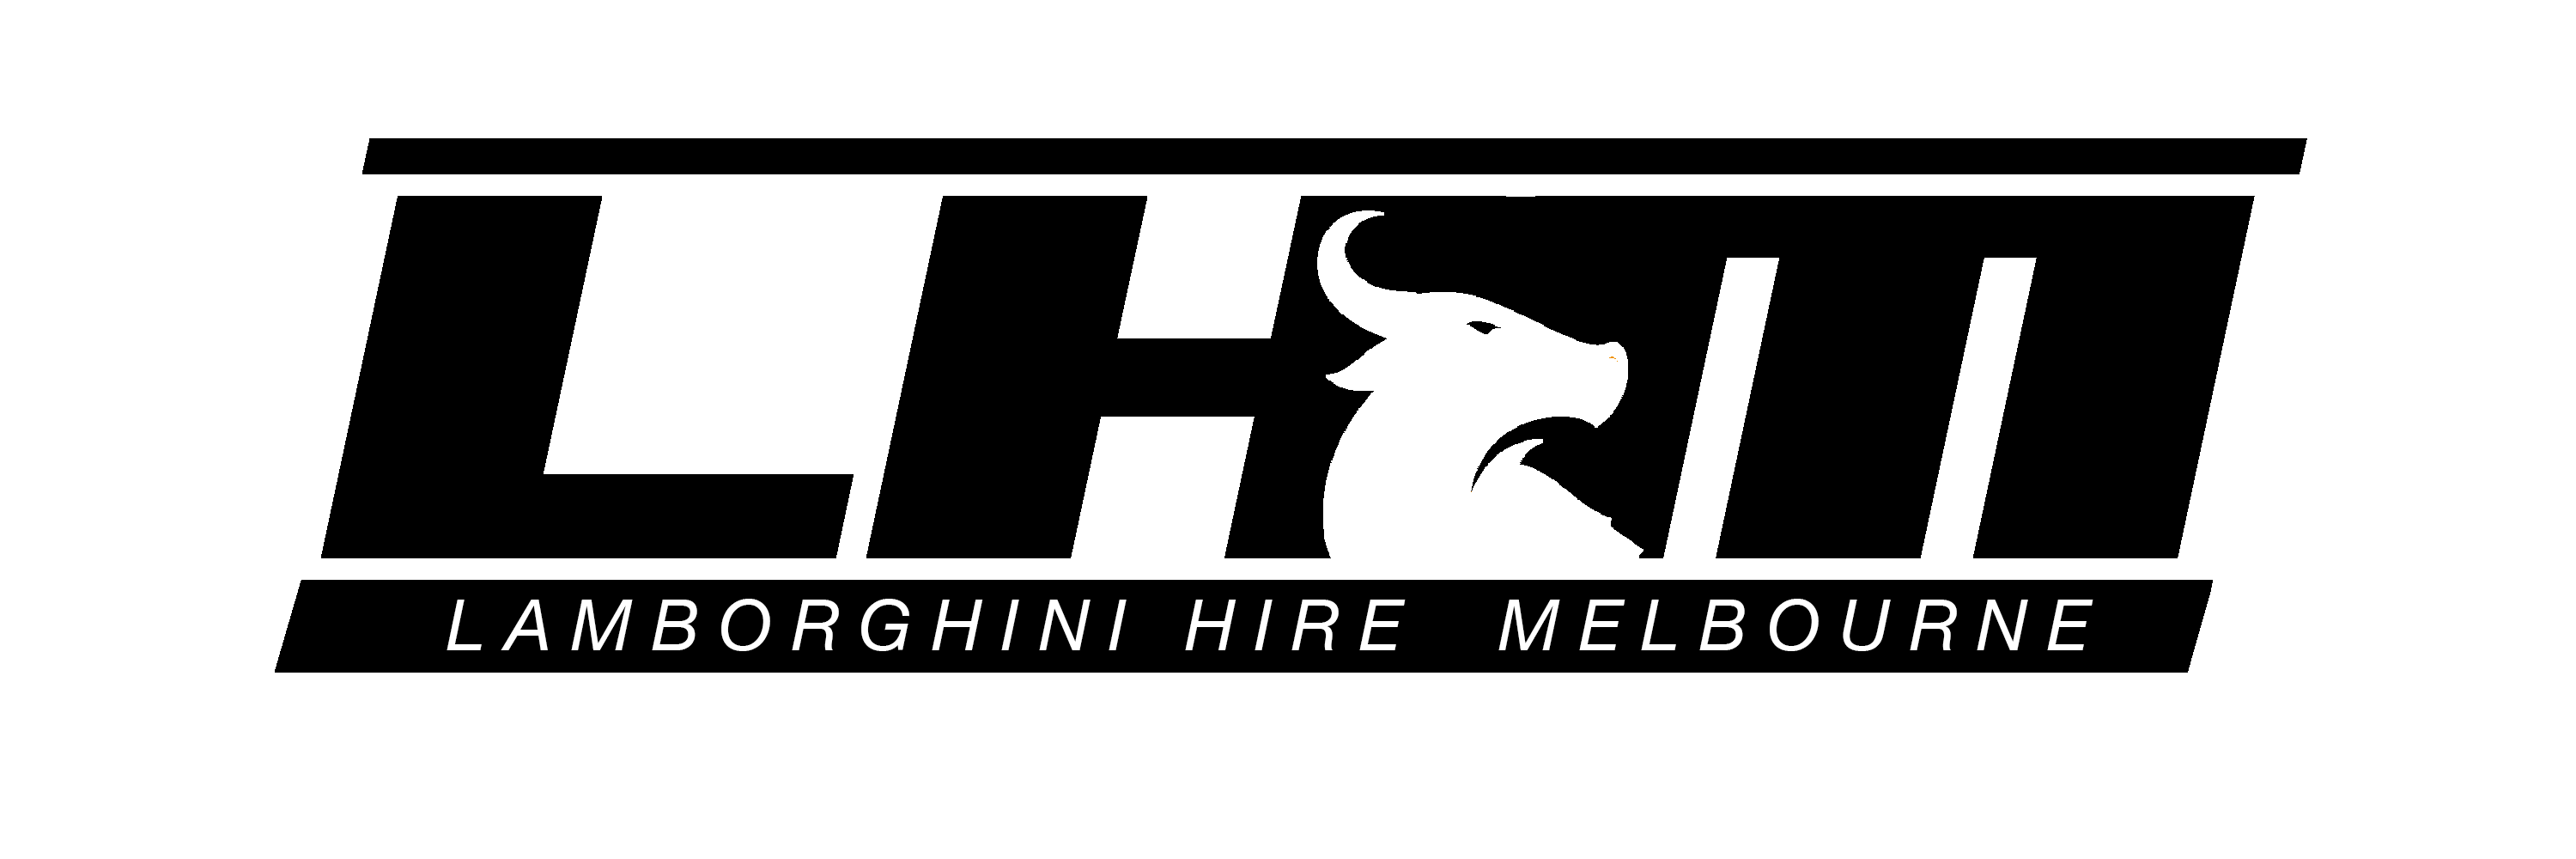 Lamborghini Hire Melbourne logo